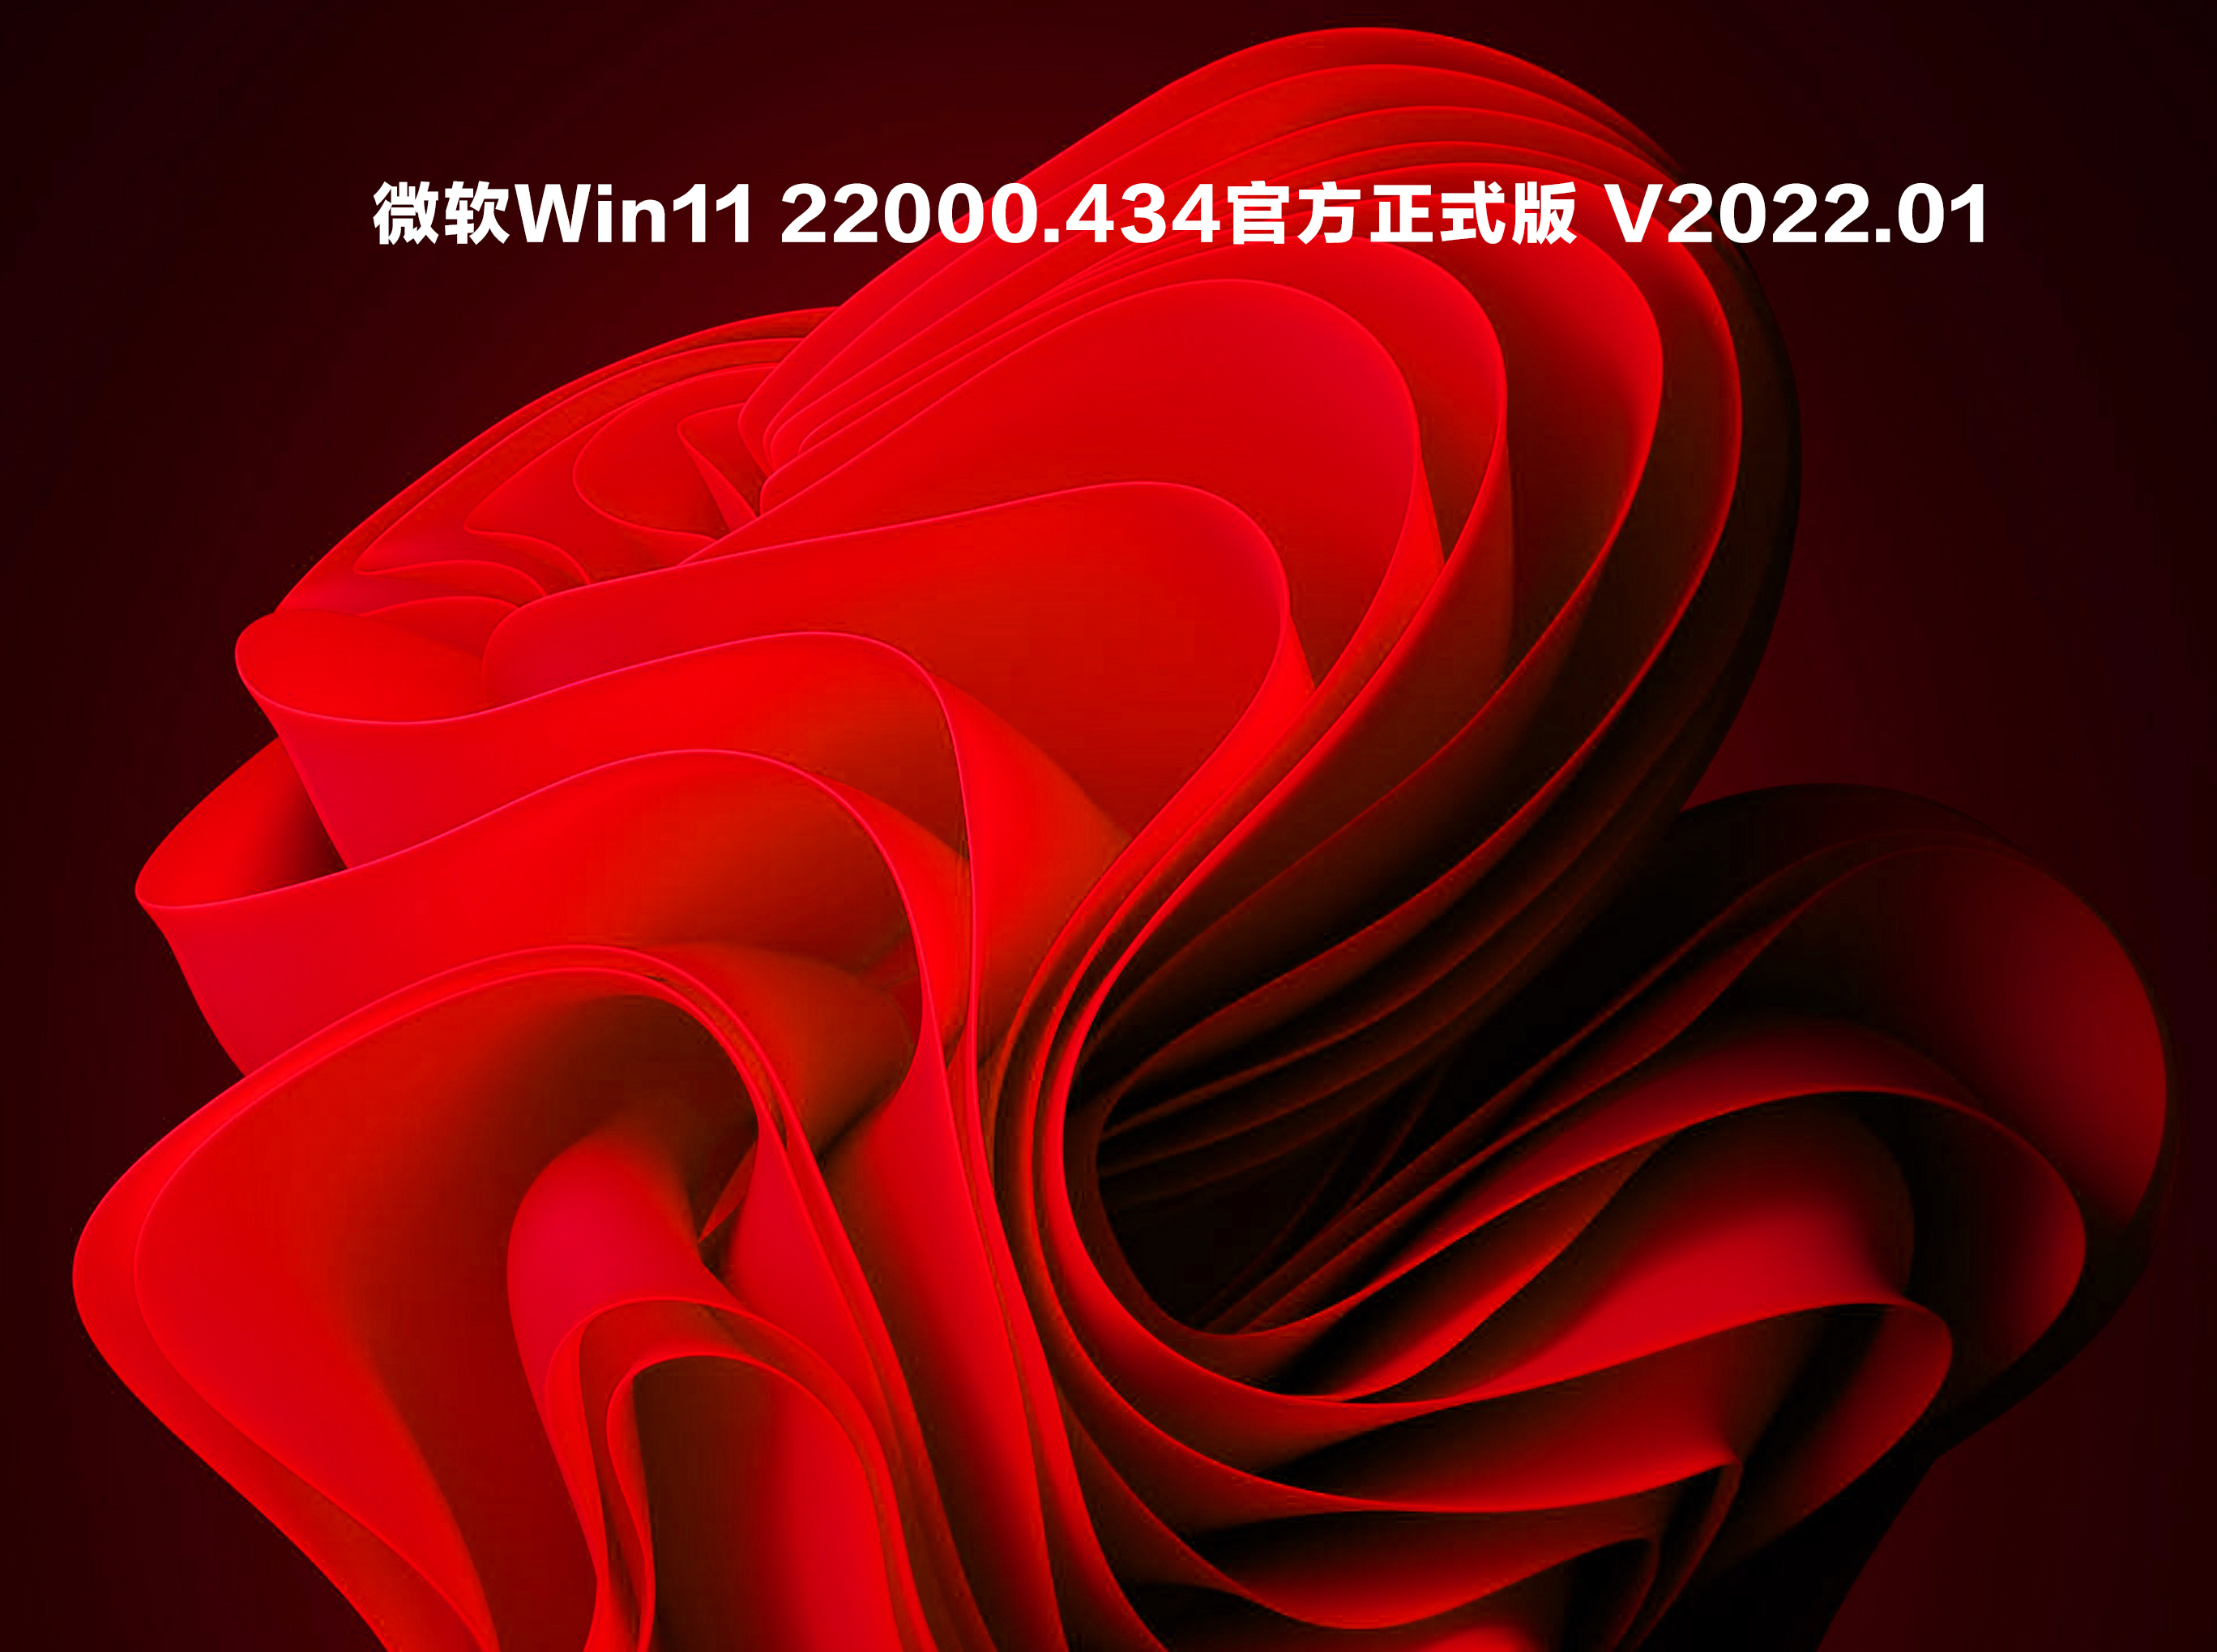 【已删除】微软Win11 22000.434官方正式版 V2022.01